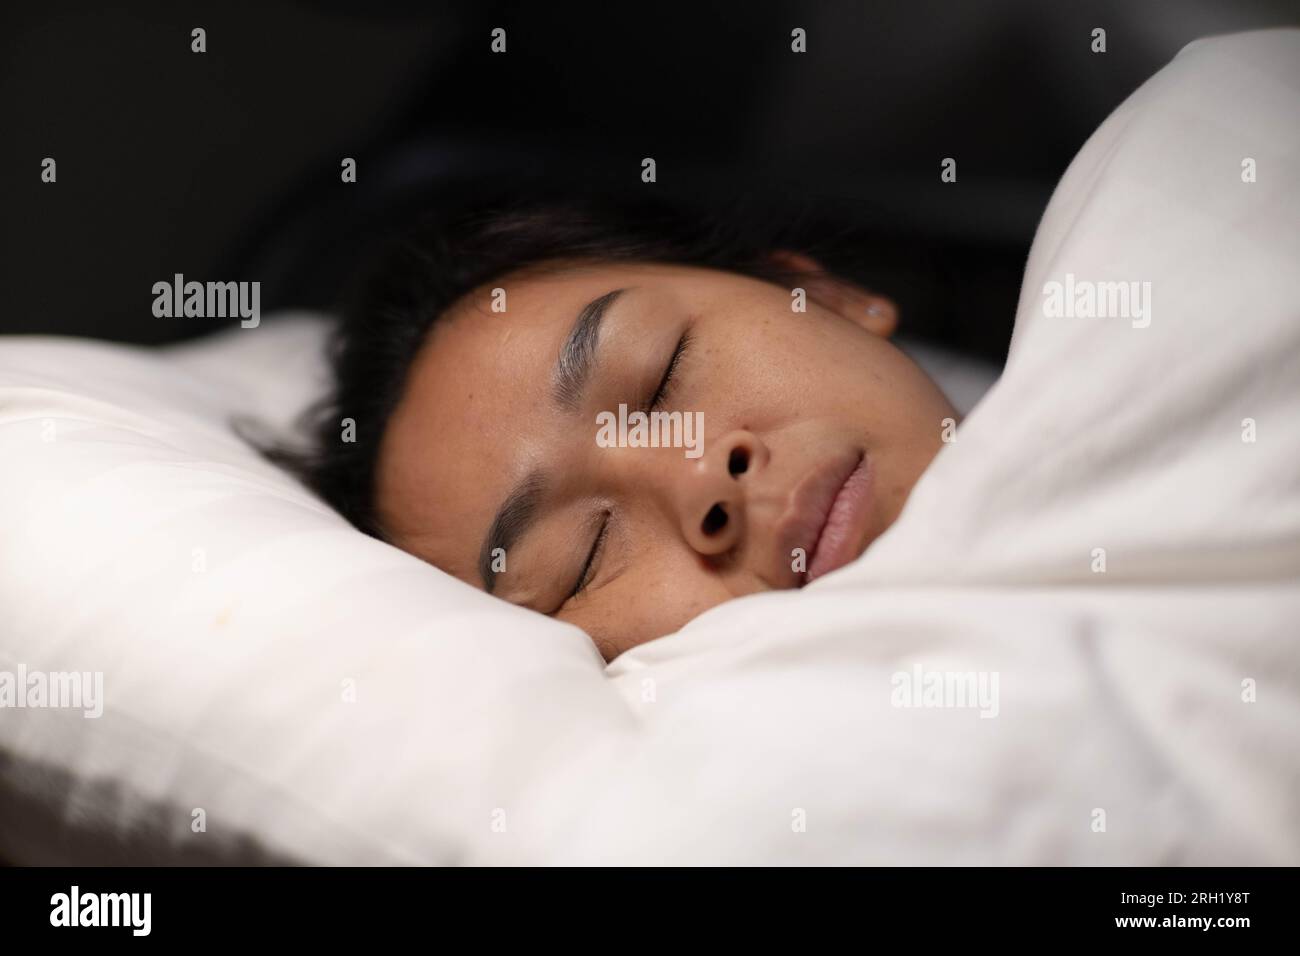 Femme asiatique reposant couvert de couverture sur des draps blancs dans la chambre. Femme dormant. Femme paisible couchée dans le lit et gardant les yeux fermés pendant qu'elle est couverte Banque D'Images